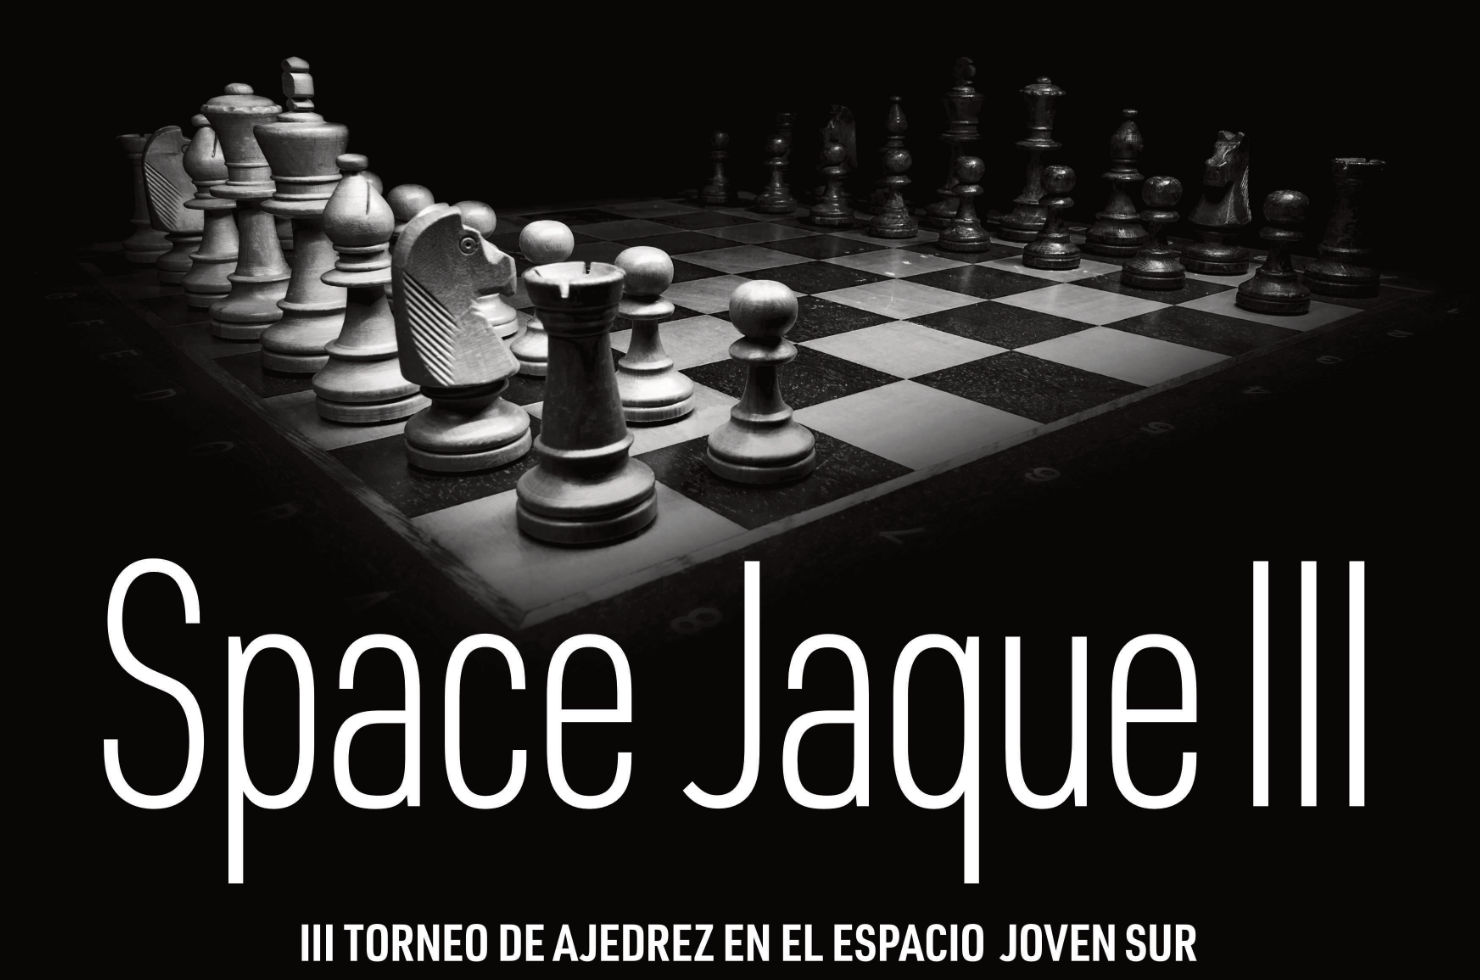 III Torneo de Ajedrez Space Jaque